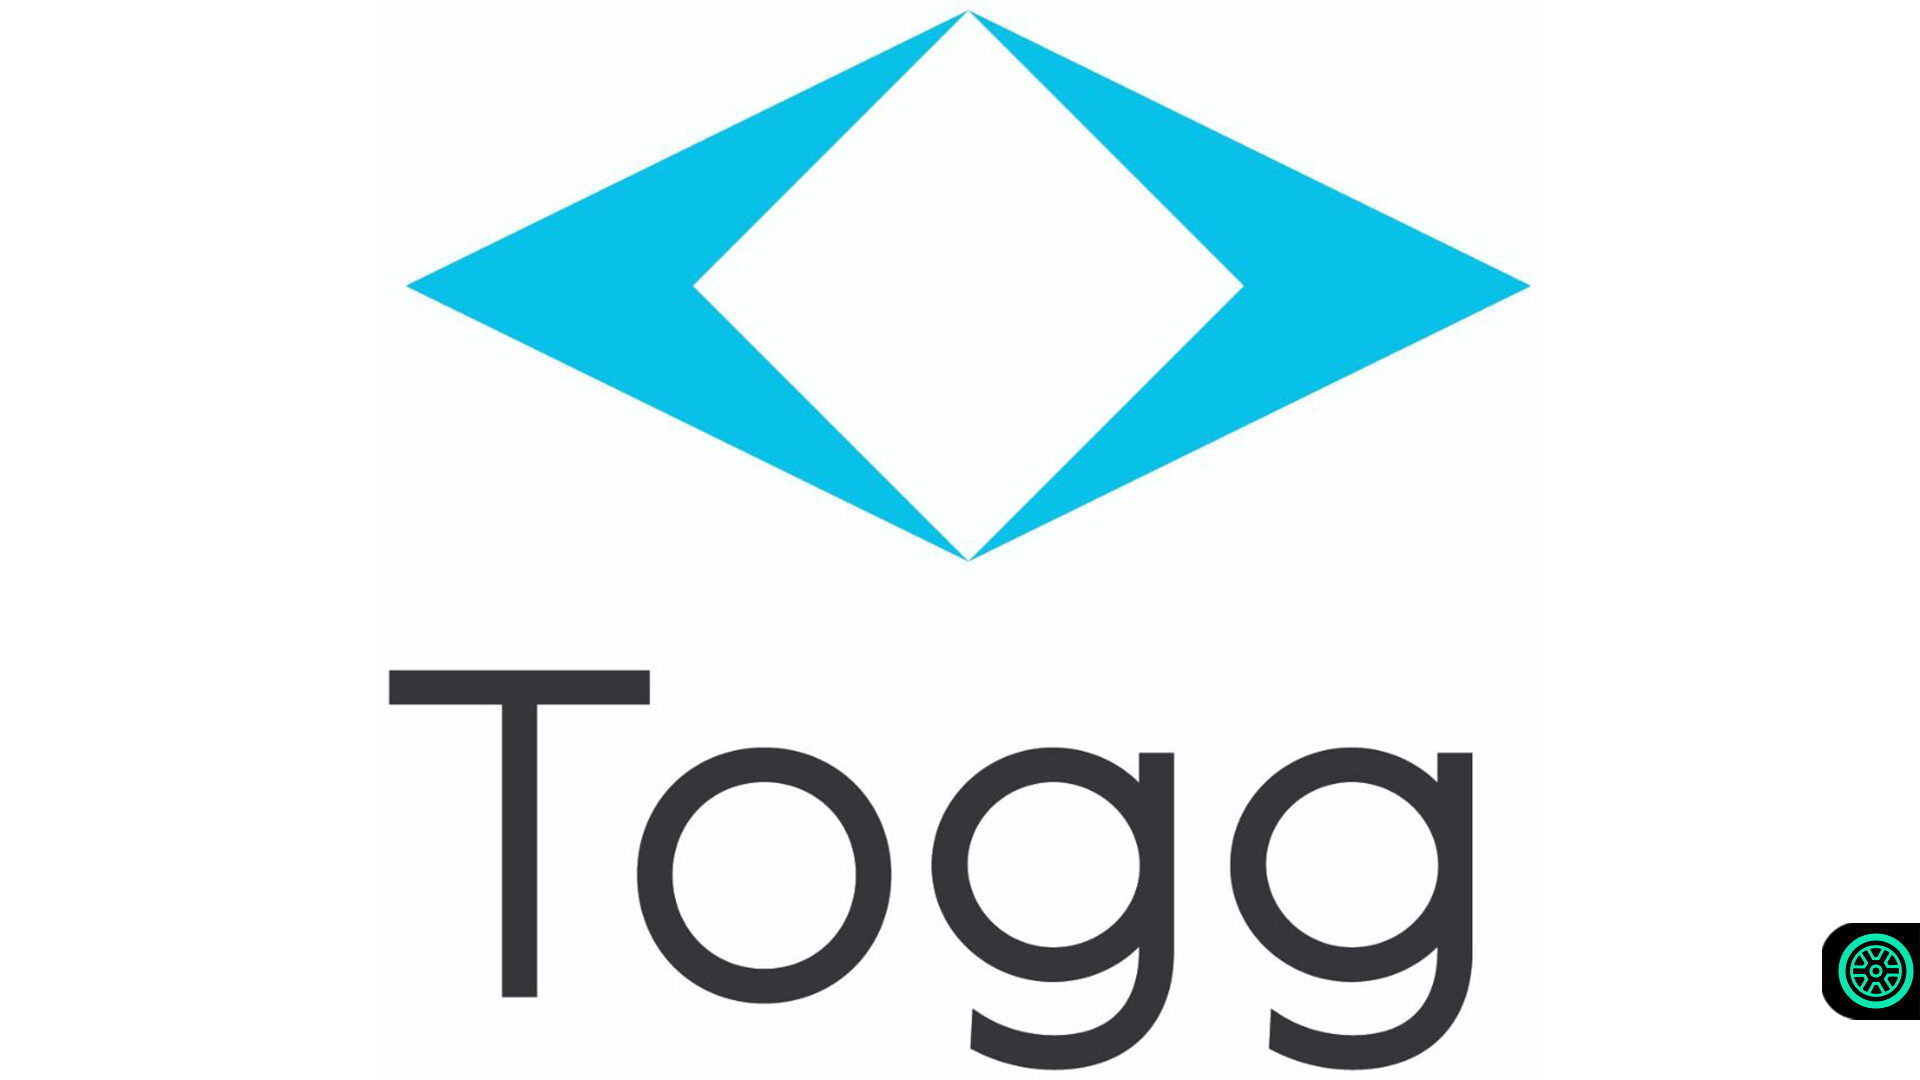 Yerli otomobil TOGG'un logosu belli oldu! 1